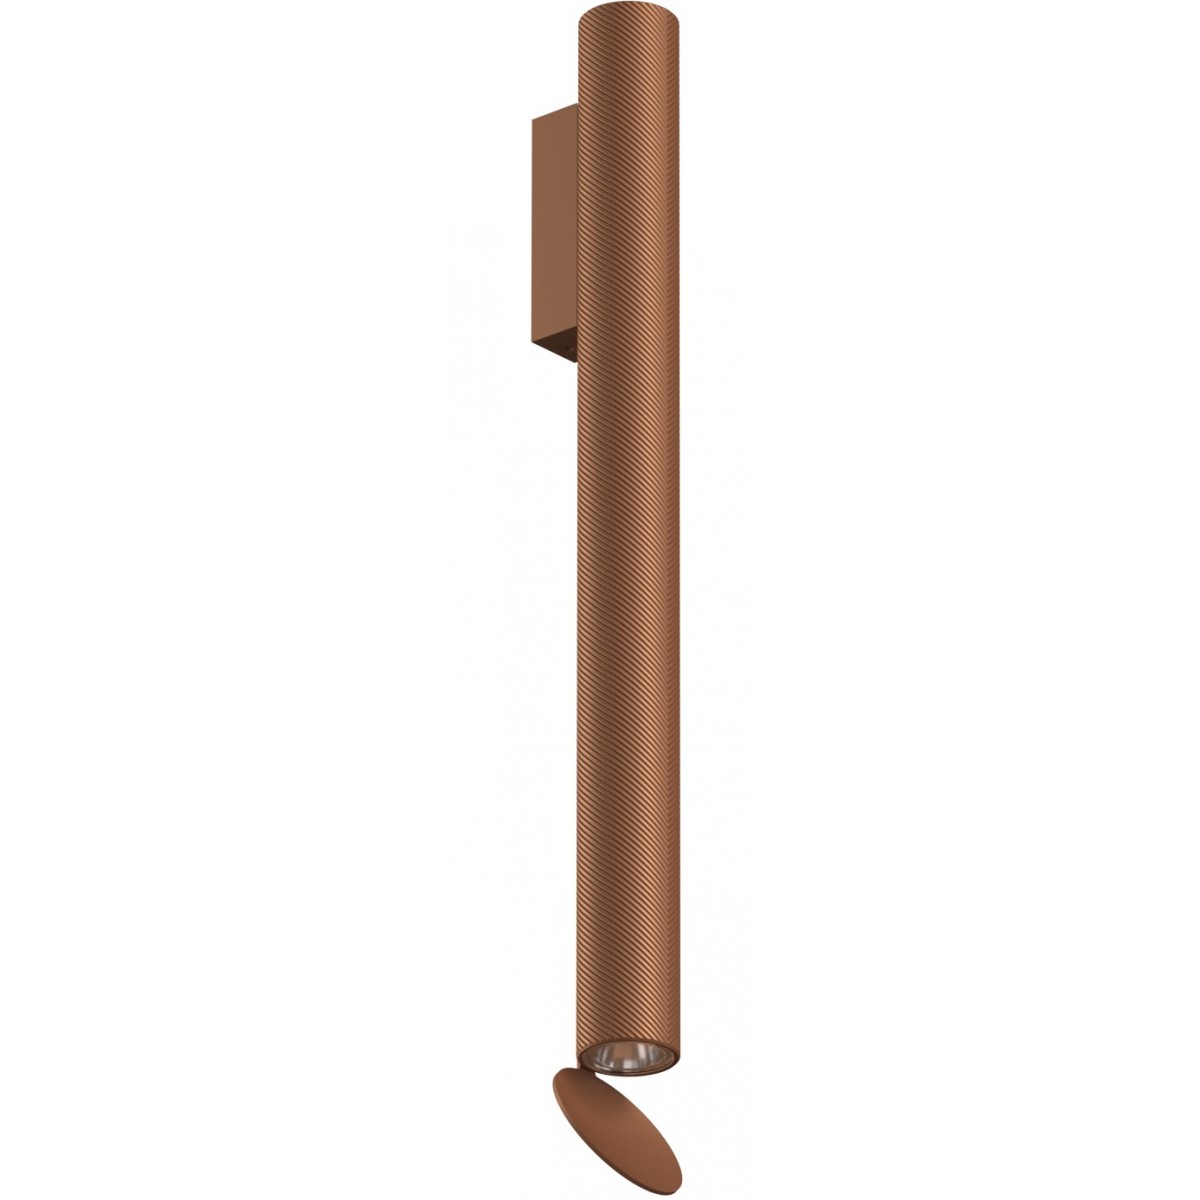 Flauta H50cm – Spiga, anodized copper - indoor